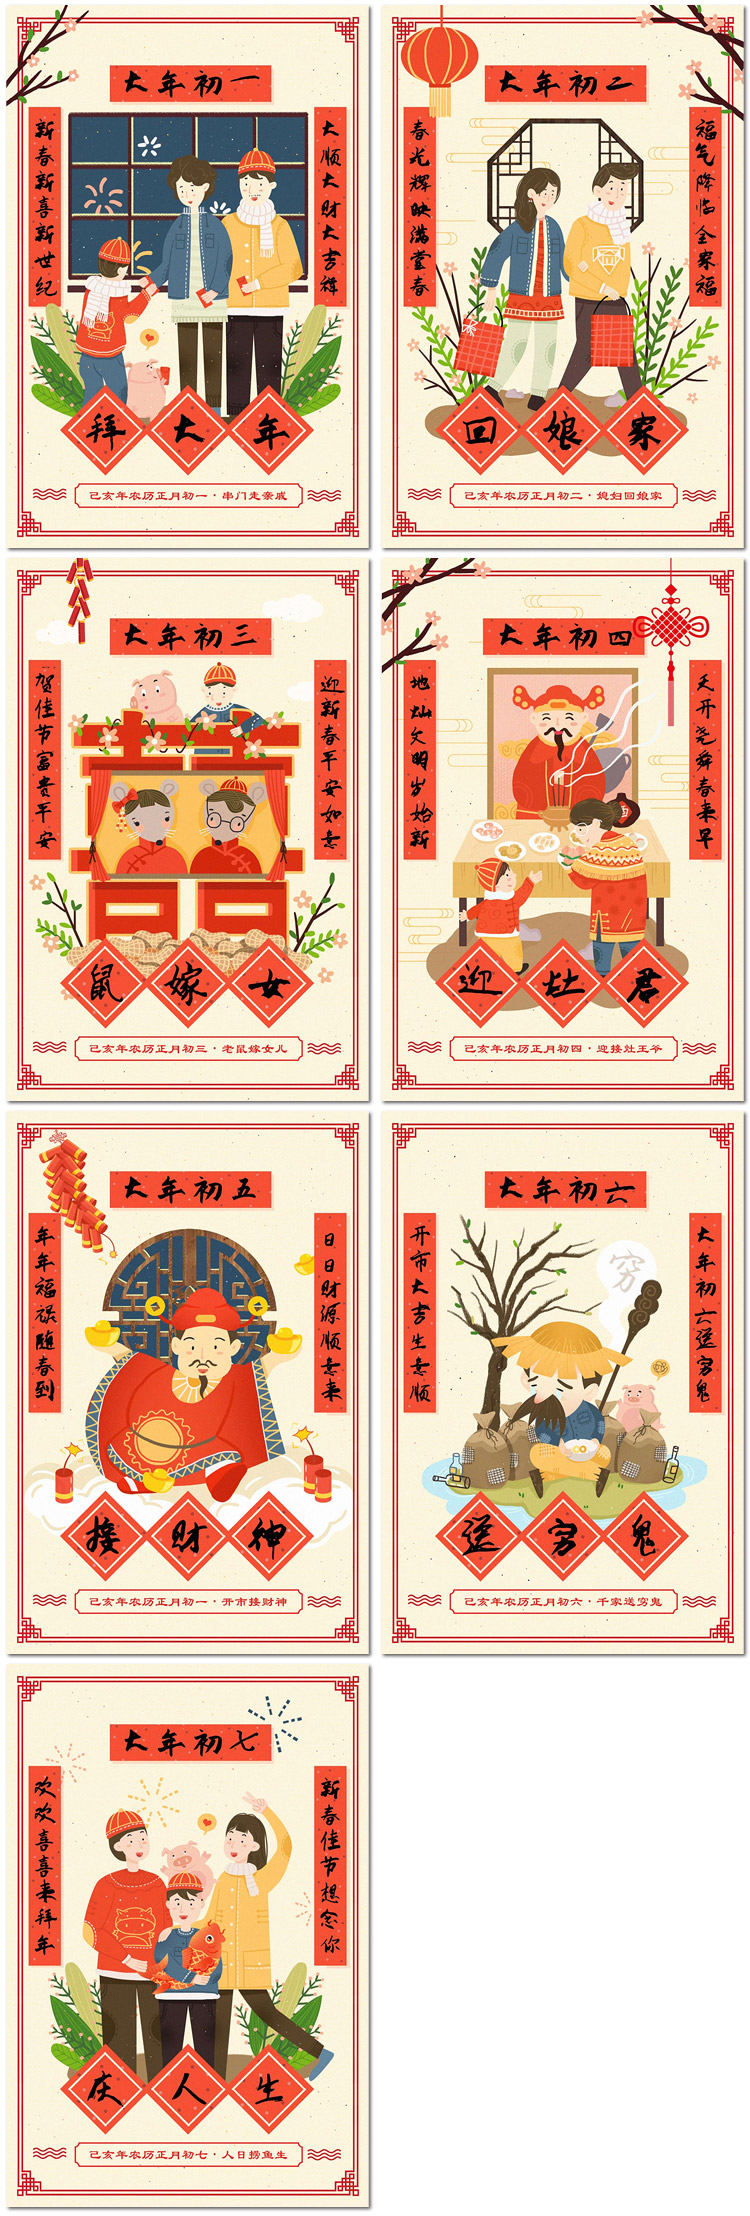 中国传统习俗过年春节大年初一至初八插画海报psd素材模板设计